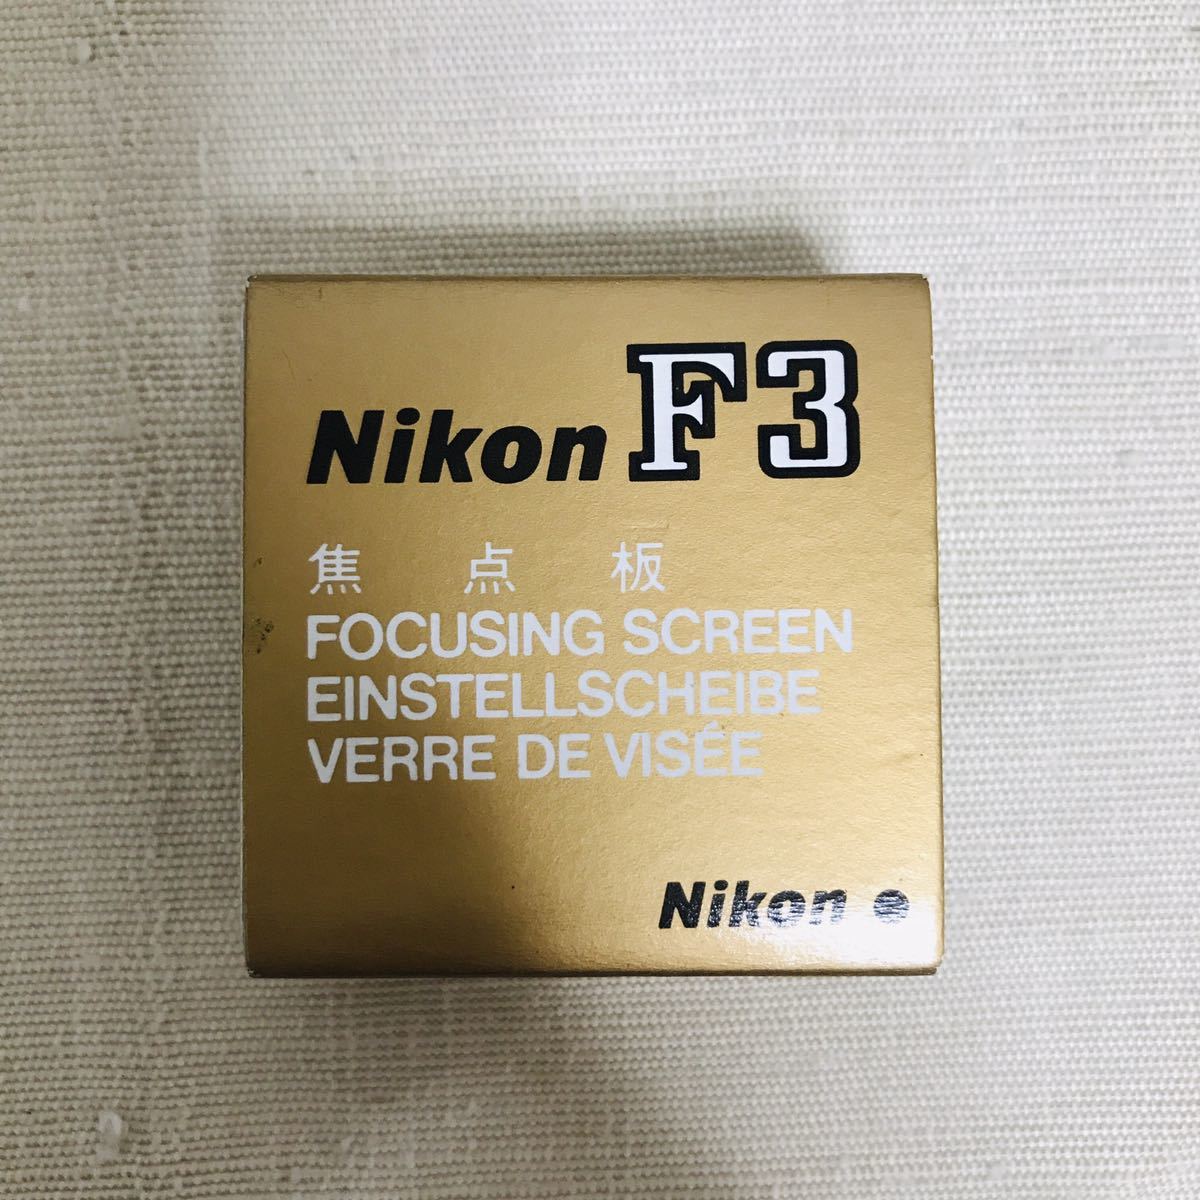 未使用品 Nikon FOCUSING SCREEN FOR Nikon F3 TYPE J ニコン F3用ファインダースクリーン マイクロマット式_画像5